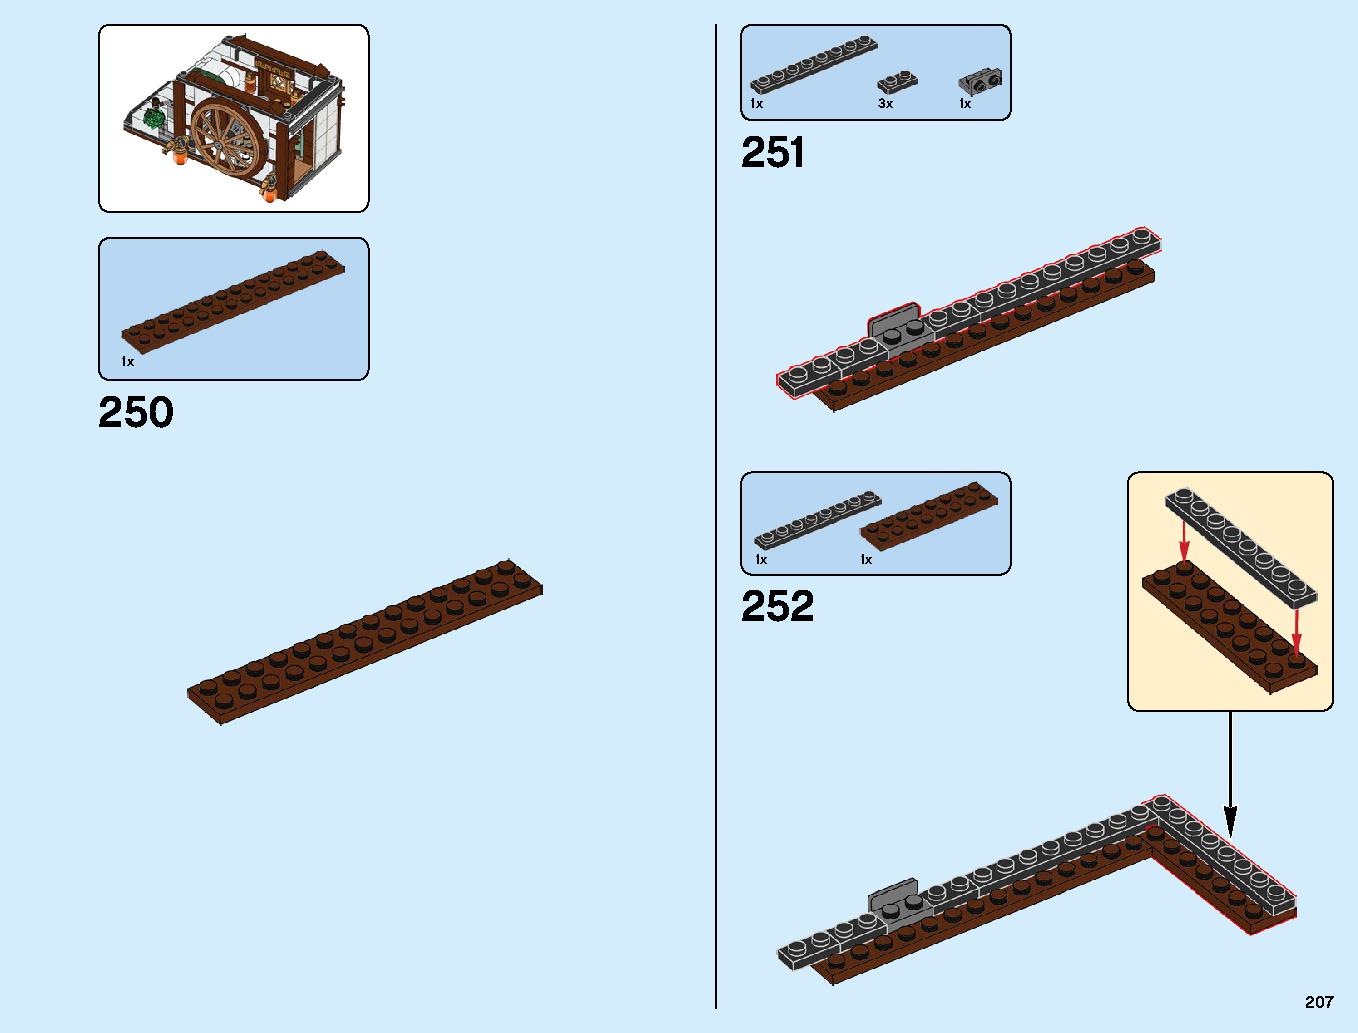 ニンジャゴーシティ・ポートパーク 70657 レゴの商品情報 レゴの説明書・組立方法 207 page